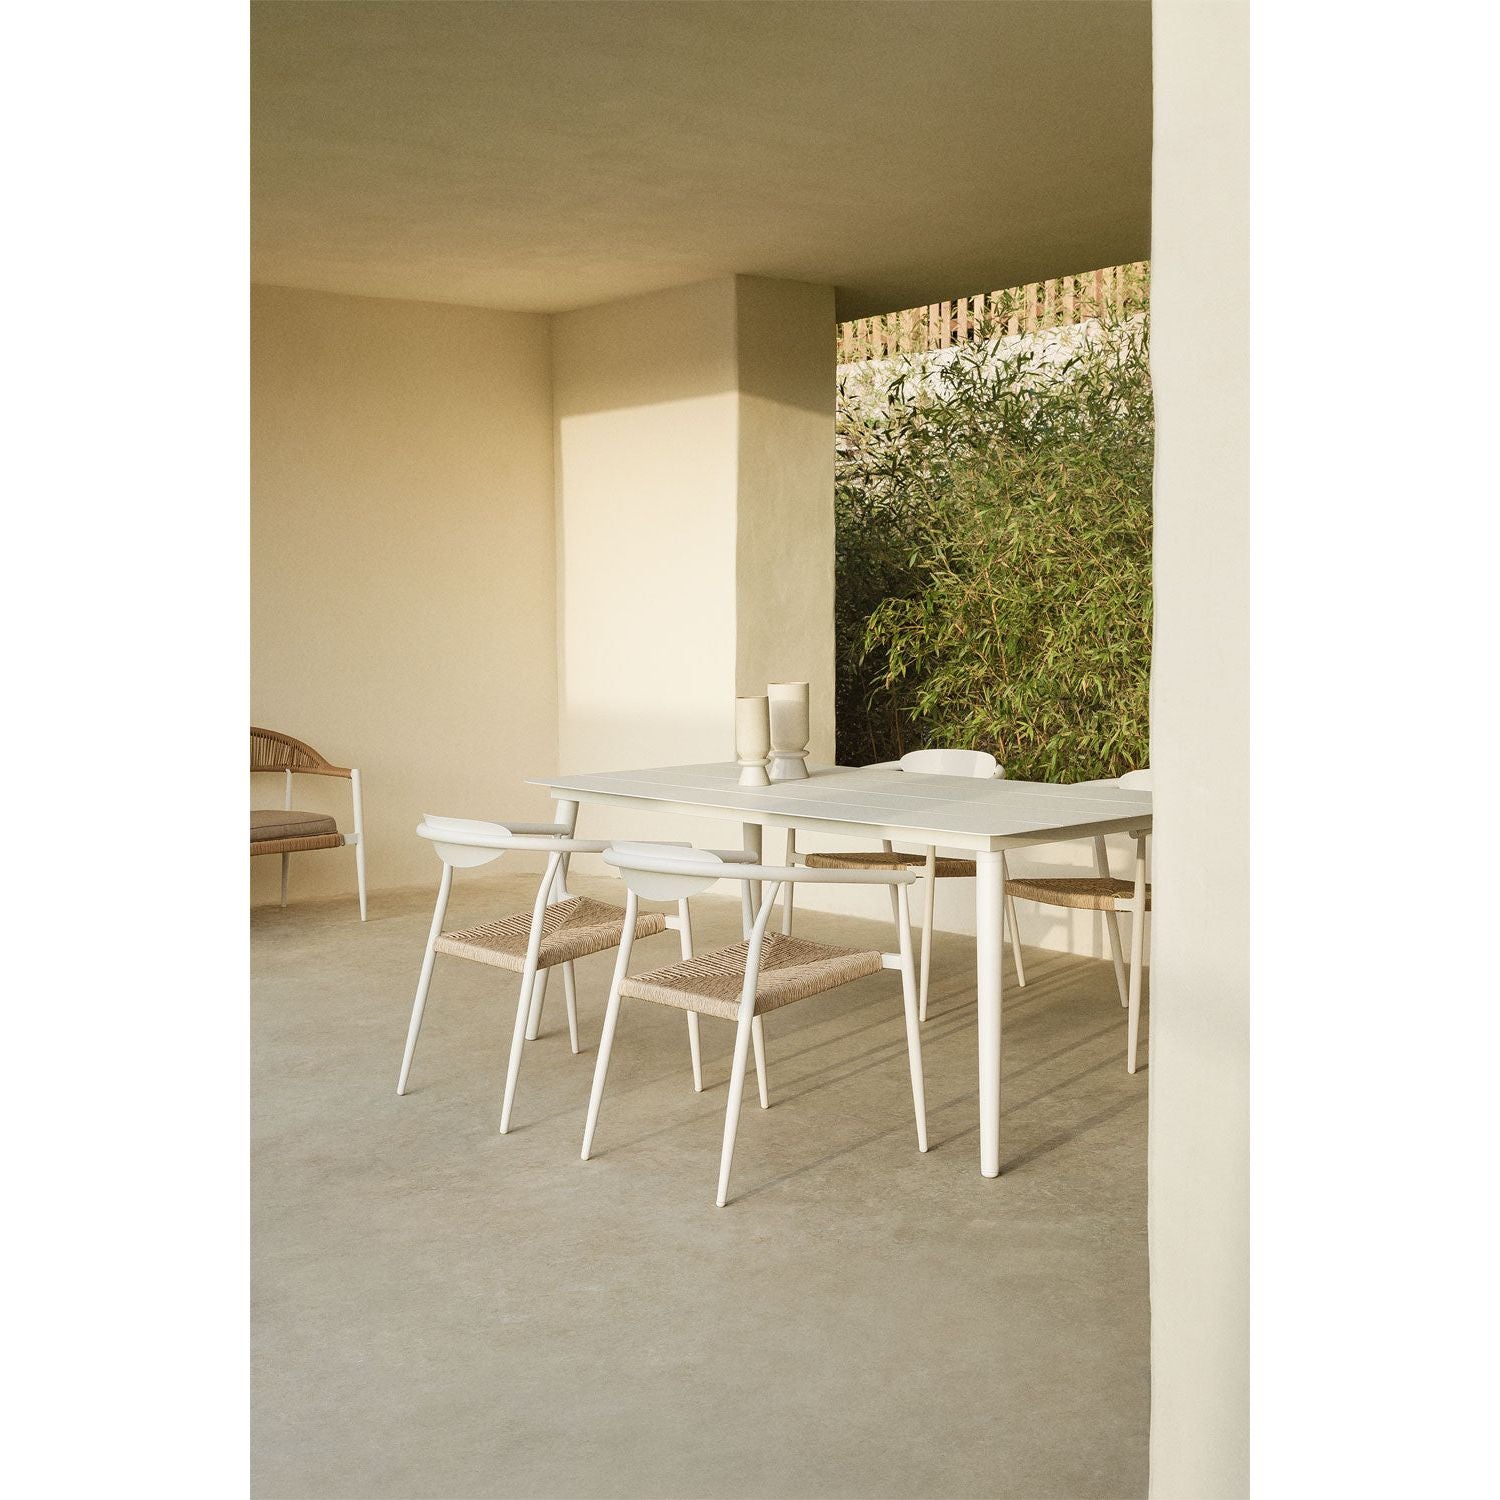 Lauko stalas KAYLEI, aliuminis, smėlio spalva, 160x90 cm